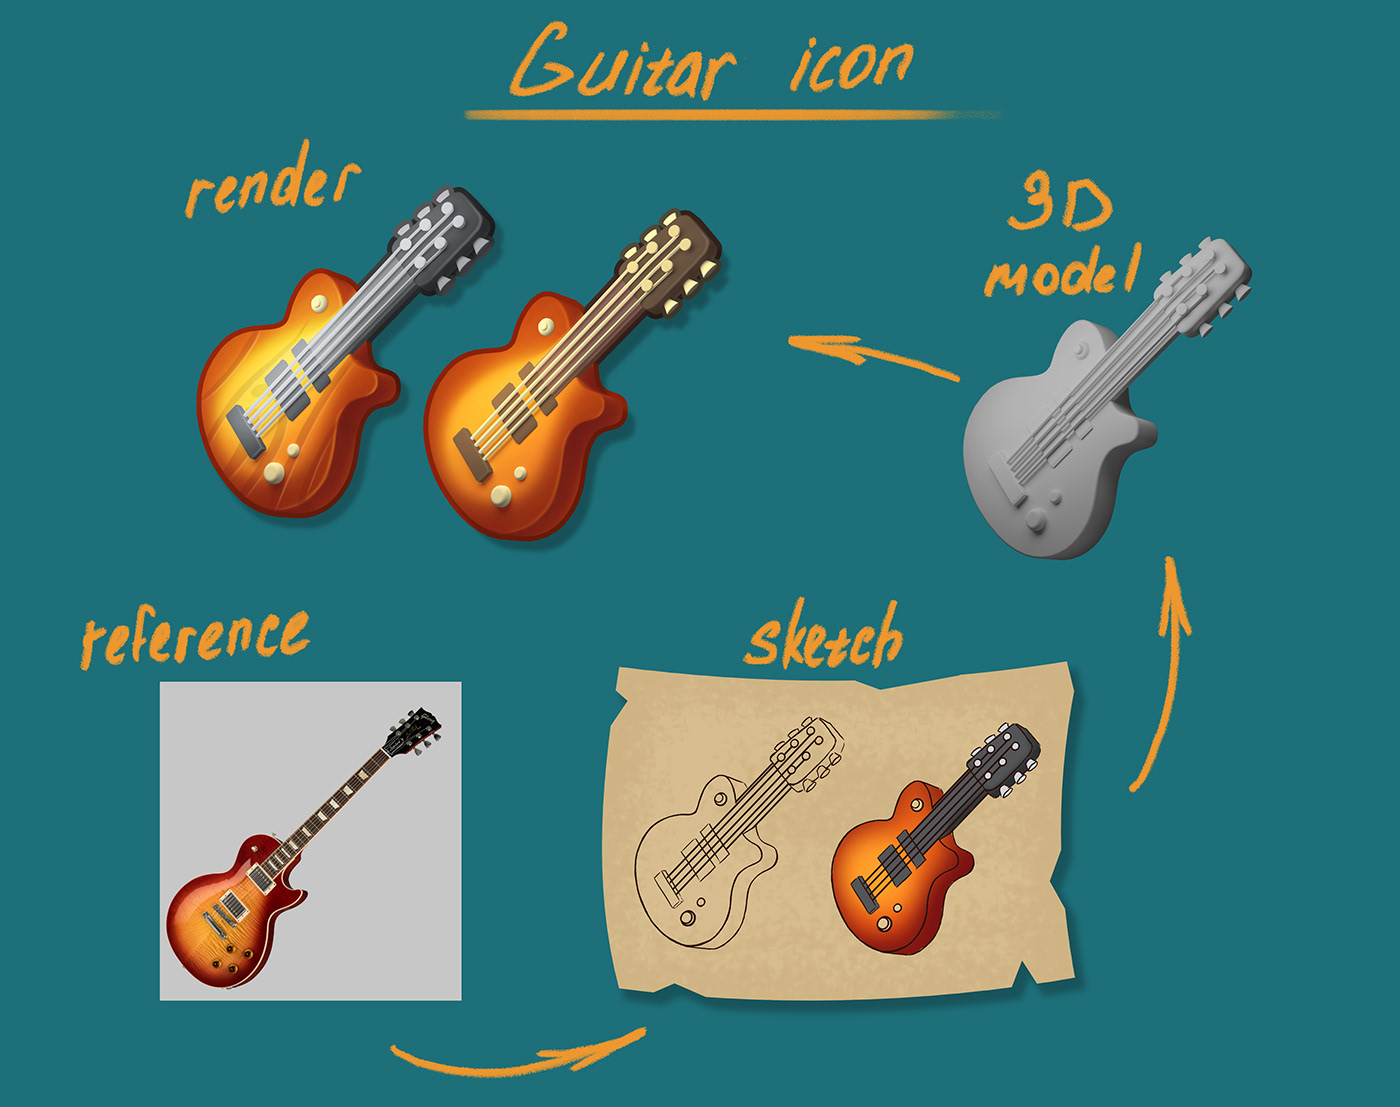 2D art 2dart 3d modeling blender cartoon casual game concept art gameart guitar icons